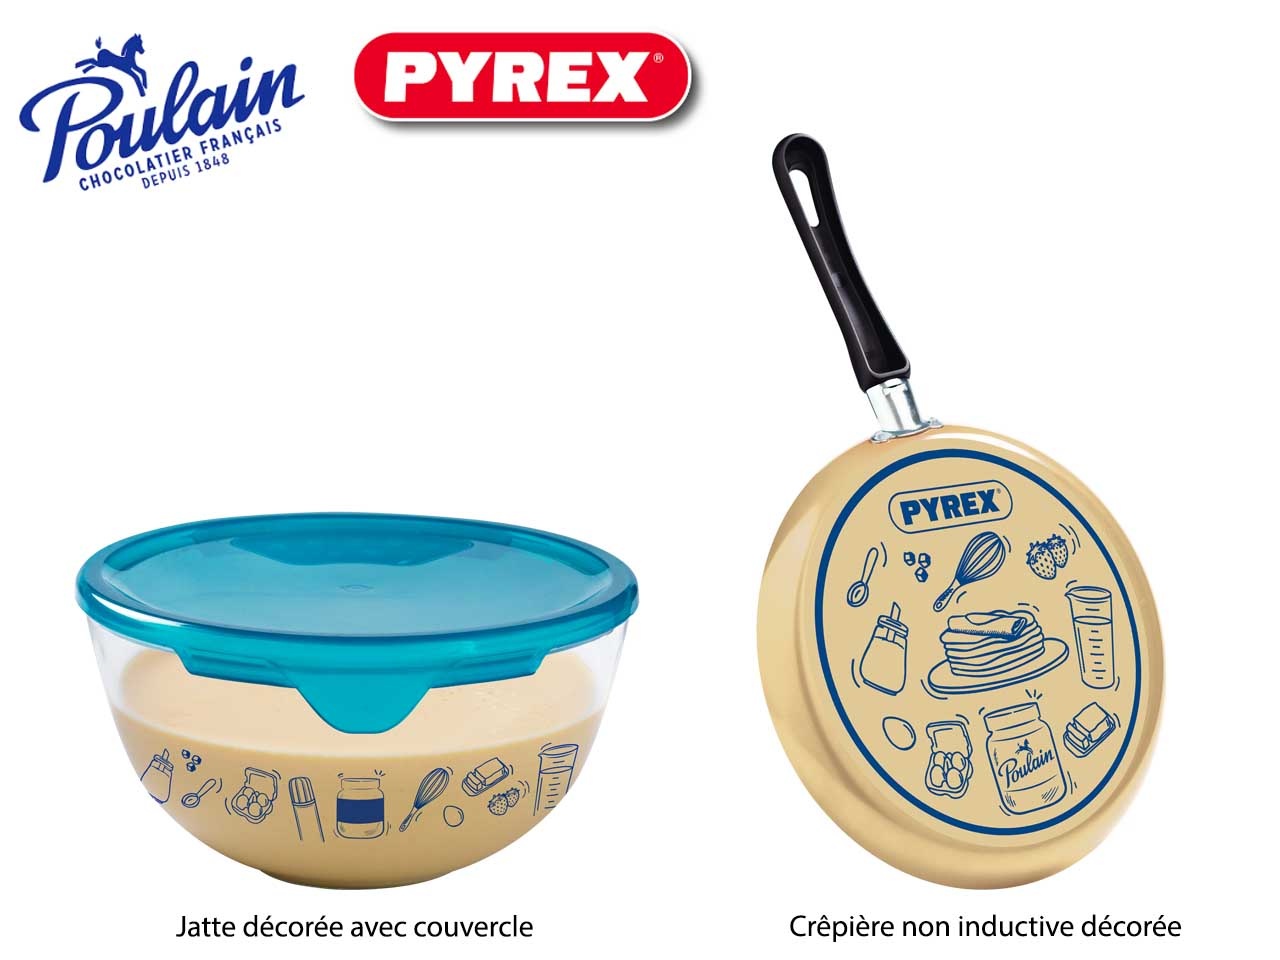 Pyrex® s’associe avec Poulain pour une chandeleur faite-maison, gourmande et conviviale !